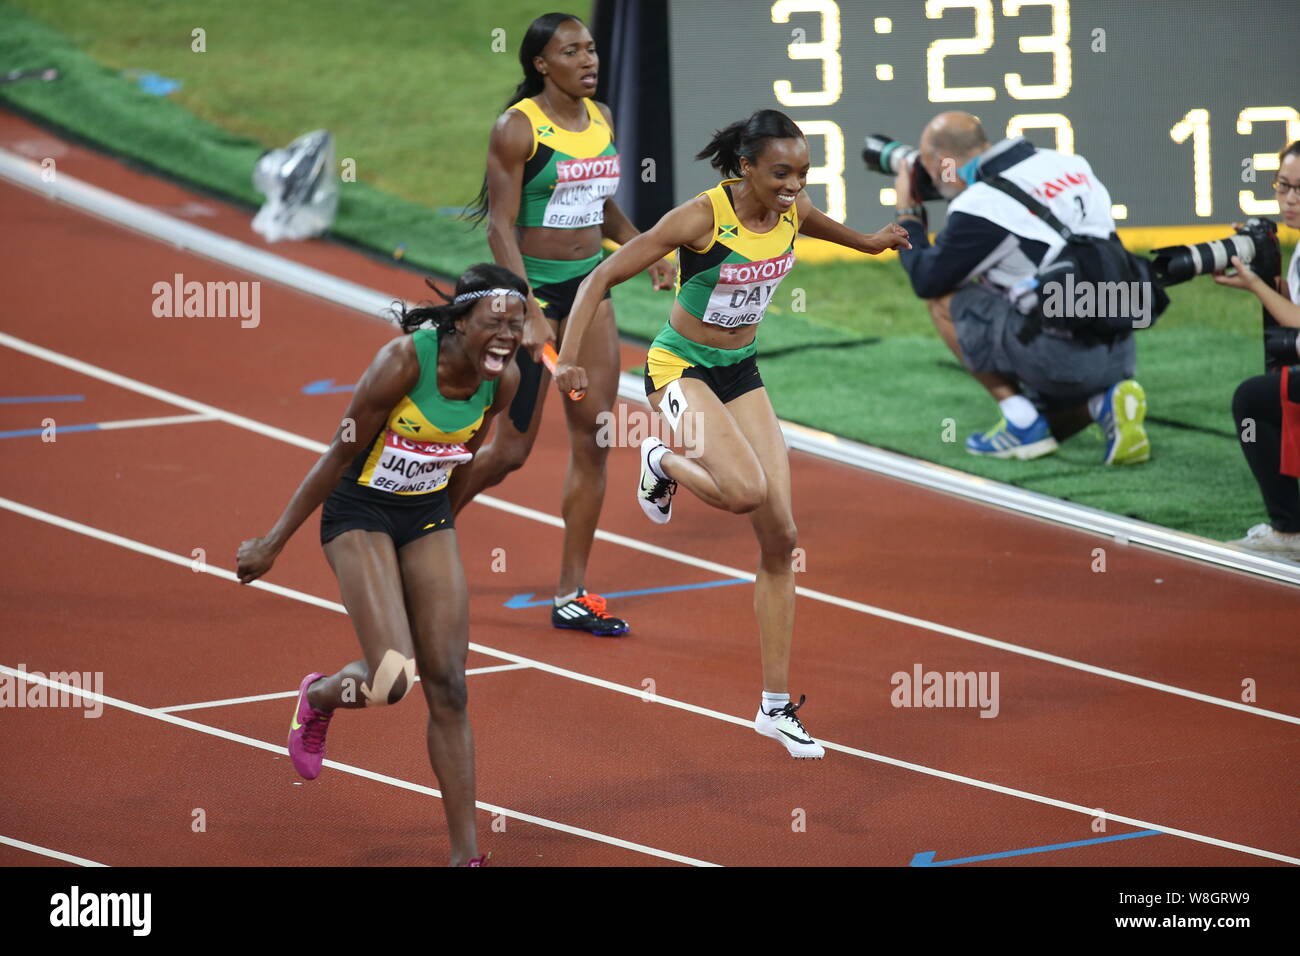 (Dalla parte anteriore) della Giamaica Shericka Jackson, Christine giorno e Novlene Williams-Mills celebrare dopo la vittoria delle donne 4x400m finale del relè durante l'essere Foto Stock